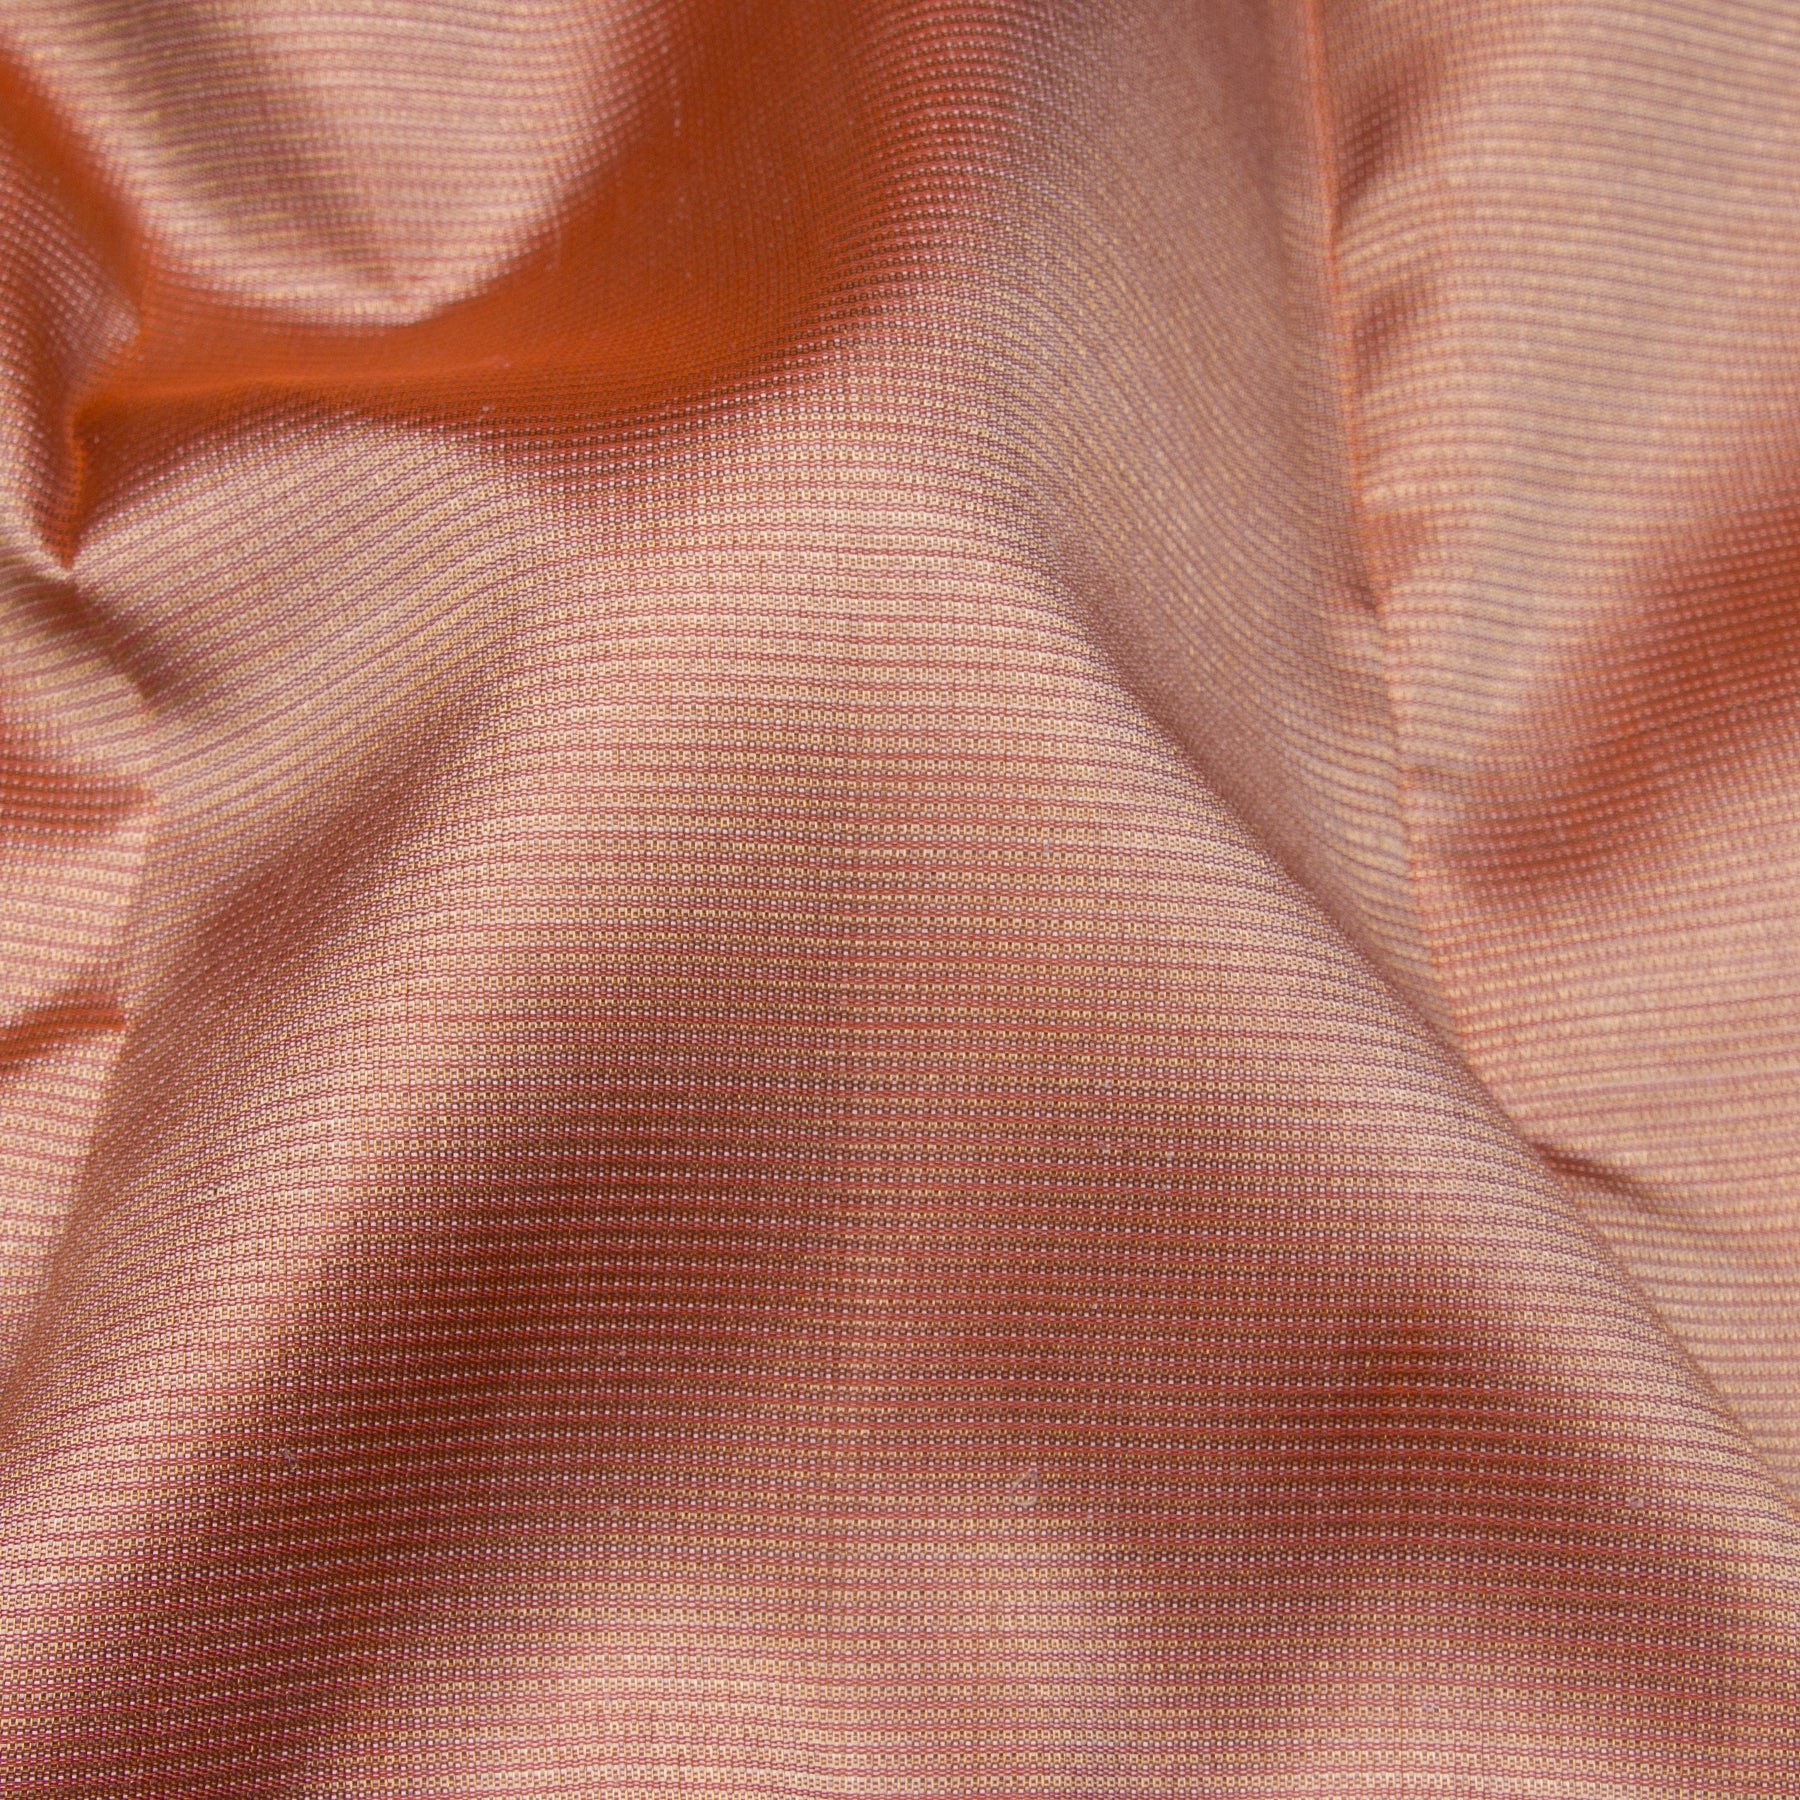 Kanakavalli Kanjivaram Silk Sari 23-599-HS001-14368 - Fabric View